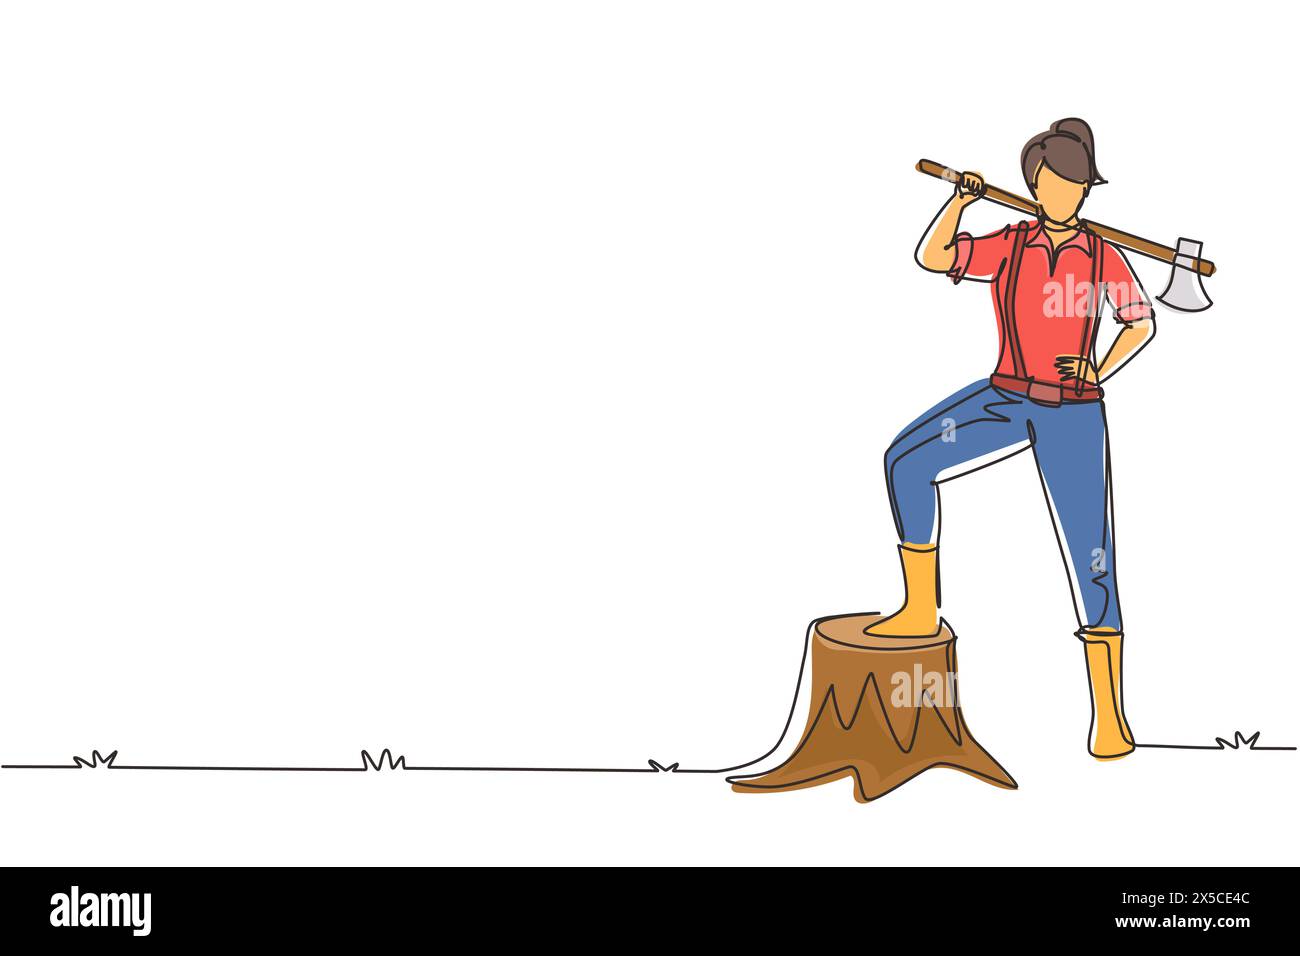 Eine einzige Linie, die hübsche Holzfäller trägt Hemd, Jeans, Stiefel. Auf ihrer Schulter eine Axt, die mit einem Fuß auf einem Baumstumpf posiert. Kontin Stock Vektor